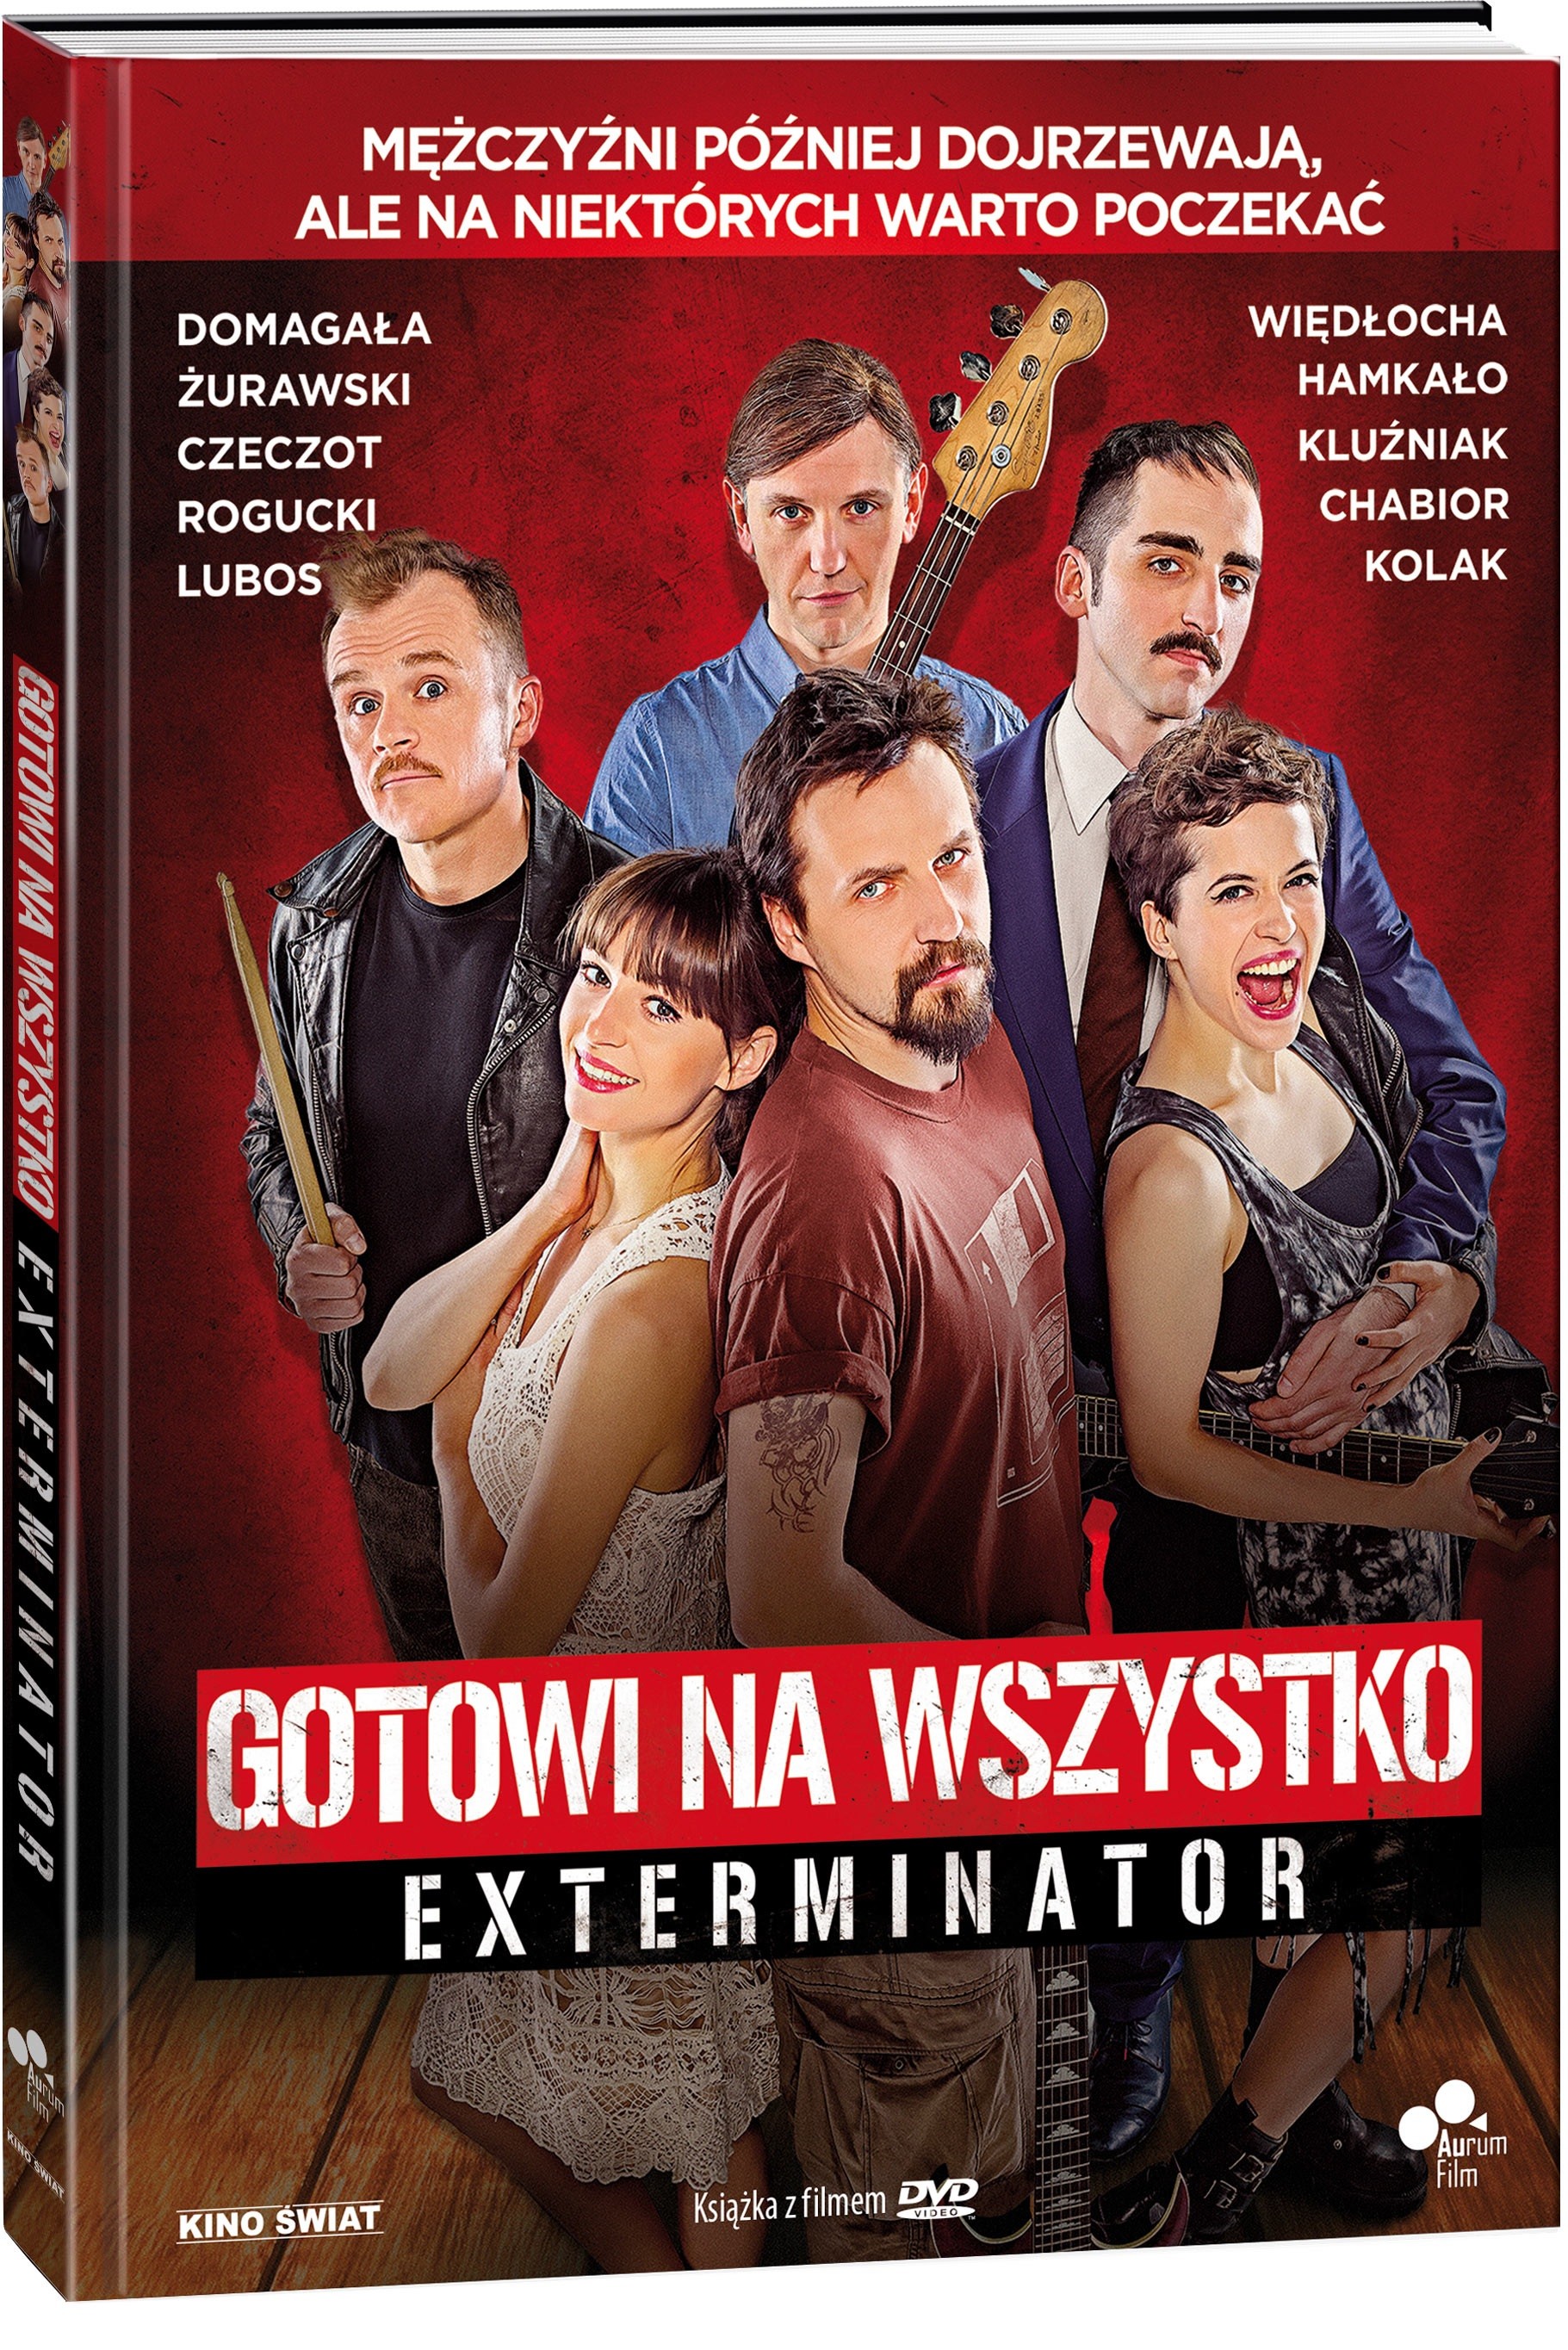 gnw.Extreminator_3D-ks-z-DVD.jpg